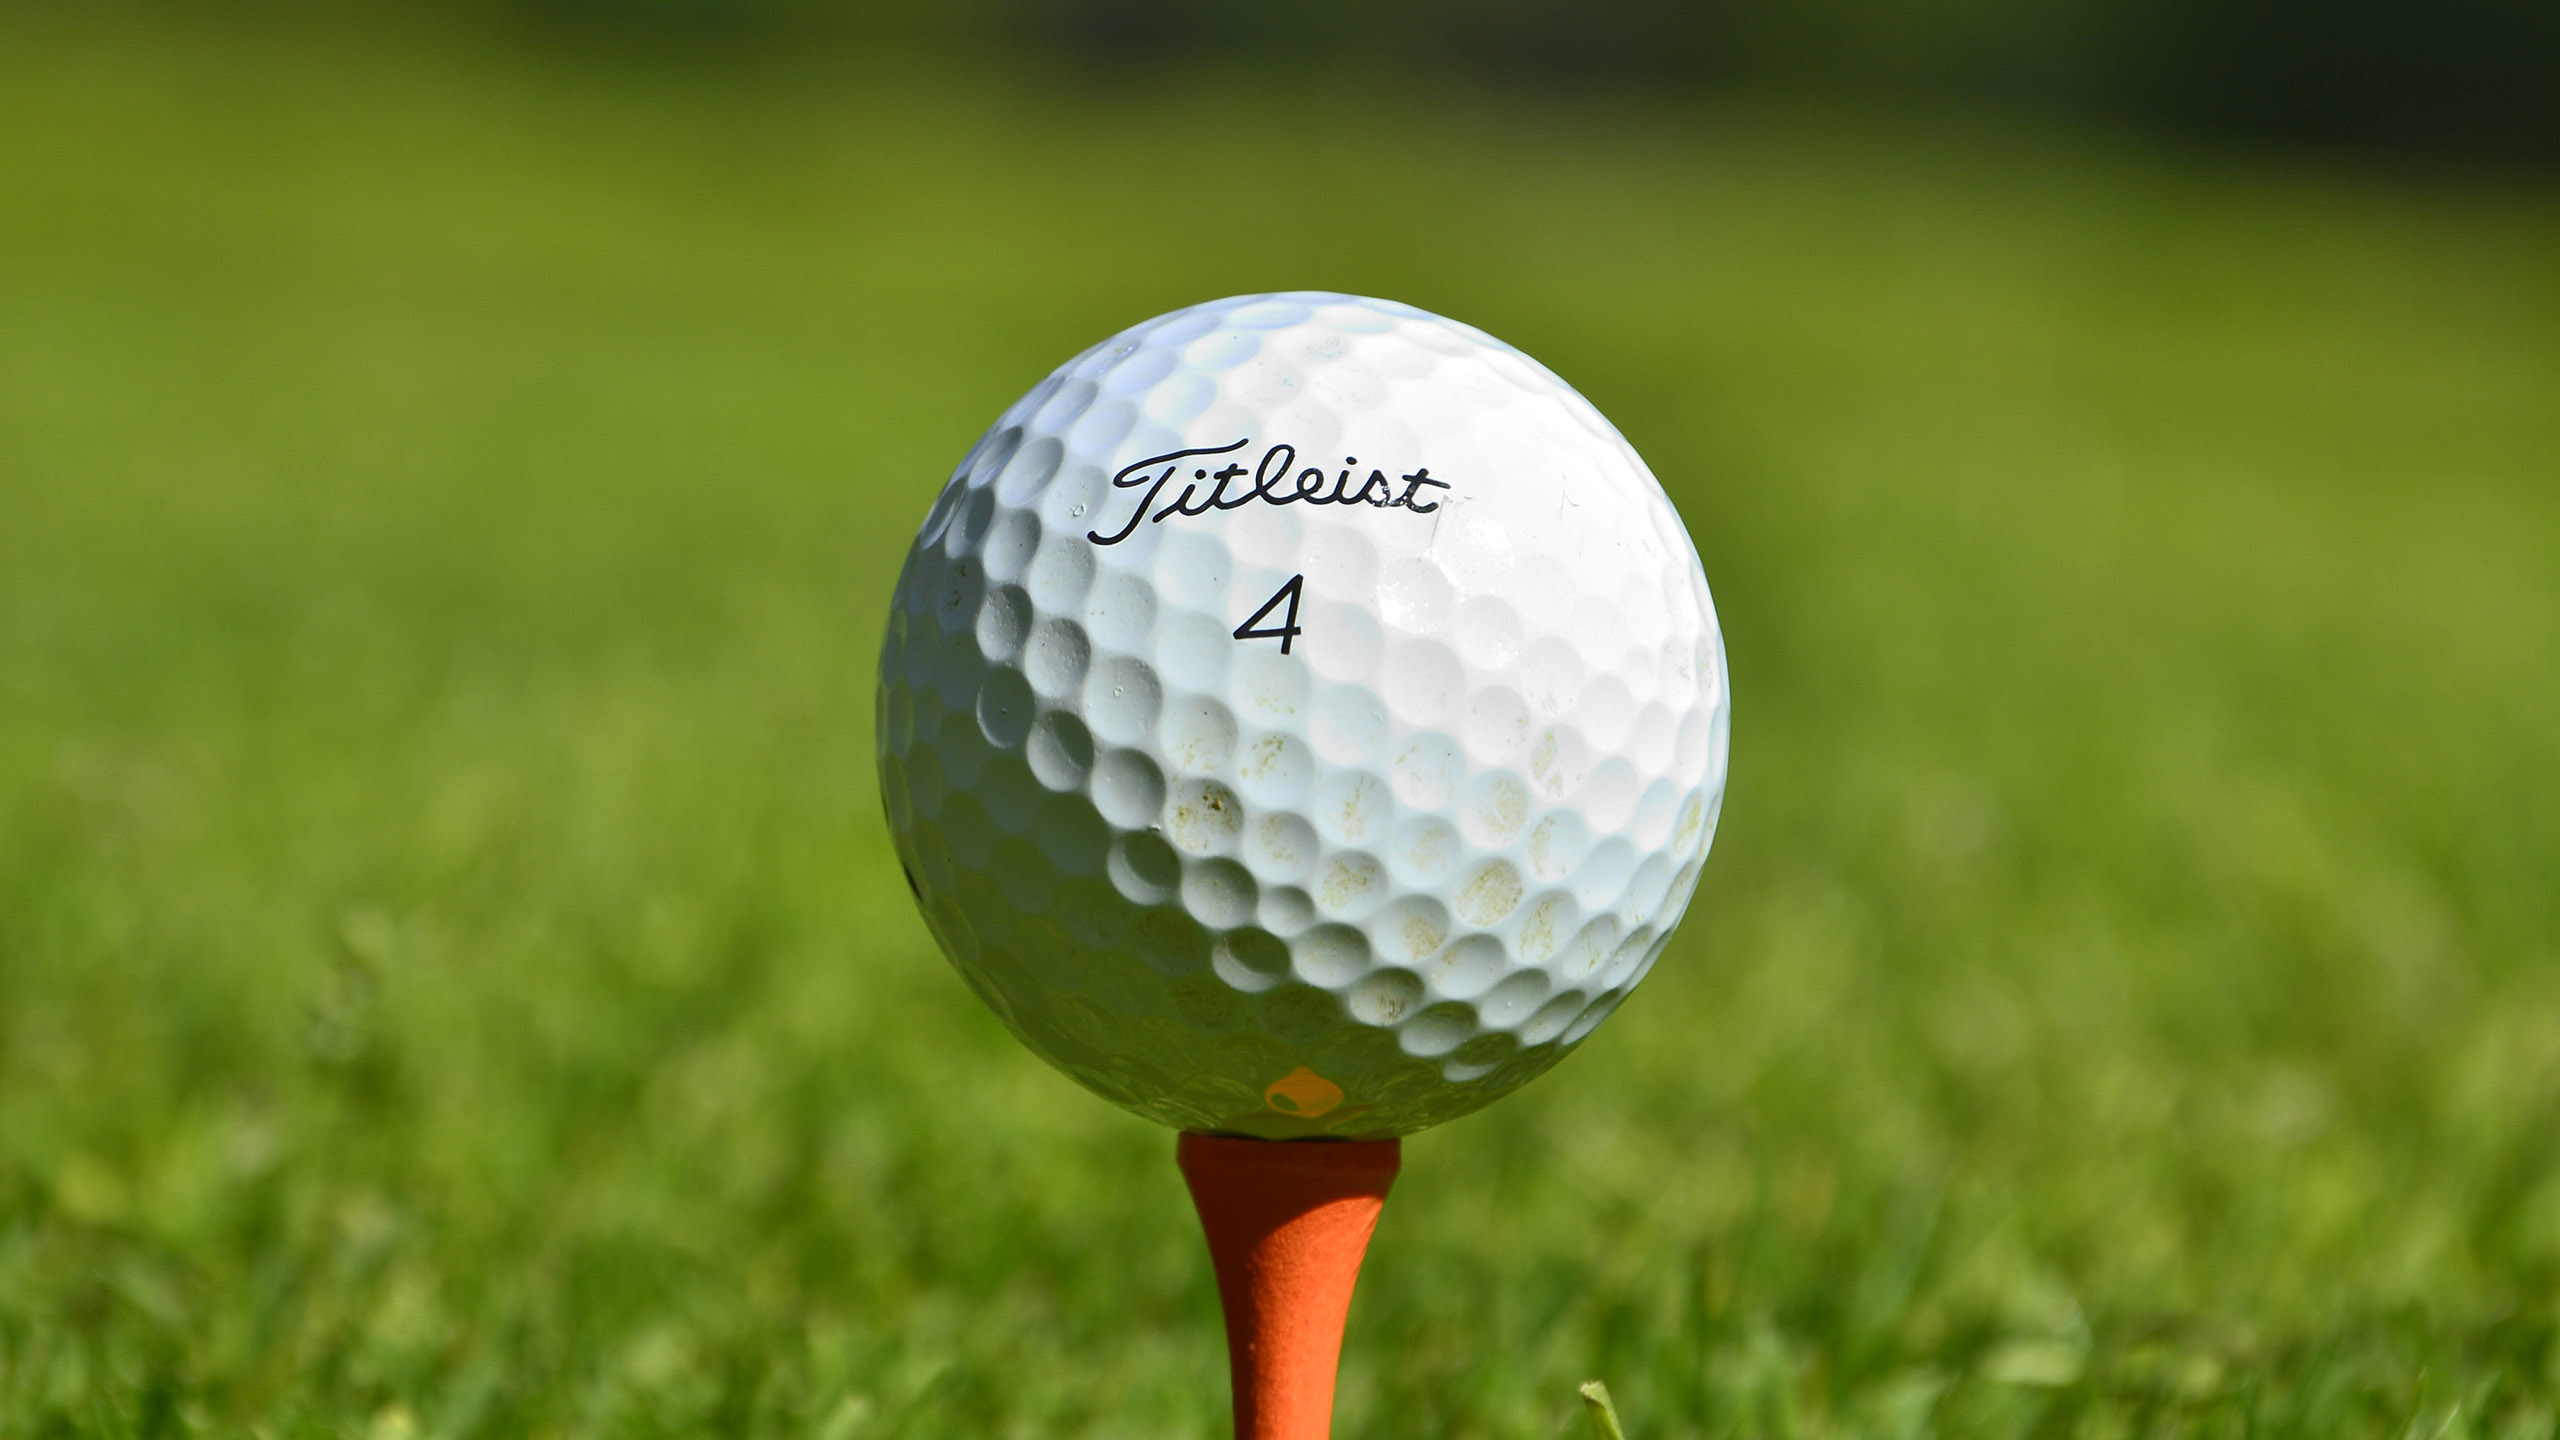 Golfboll Titleist 4 på orange golfpeg